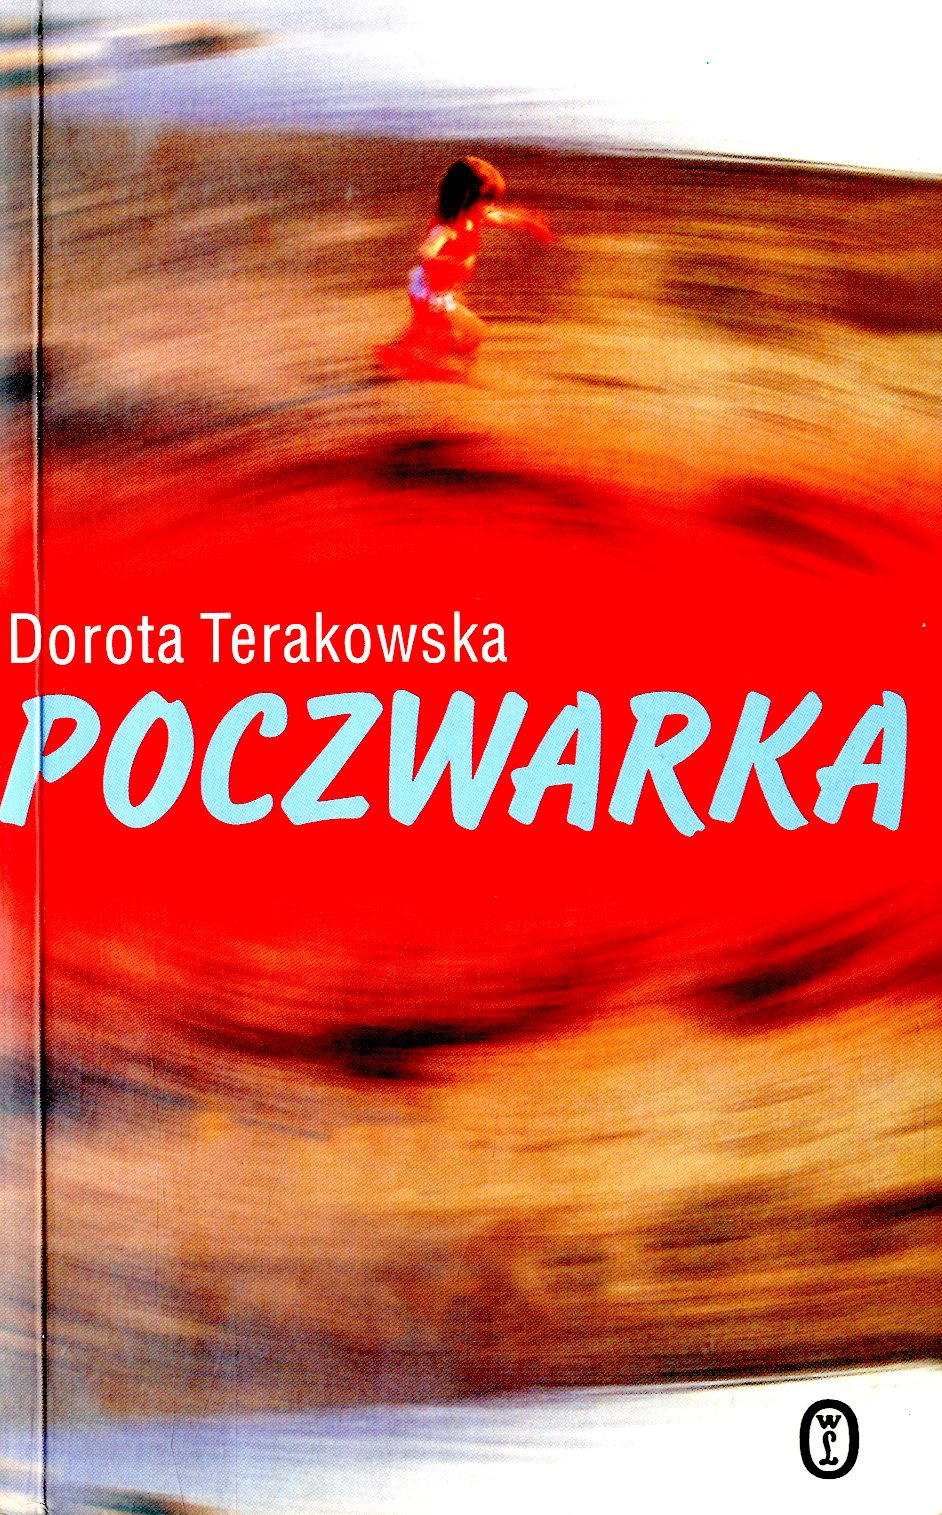 Poczwarka” Dorota Terakowska - w.bibliotece.pl